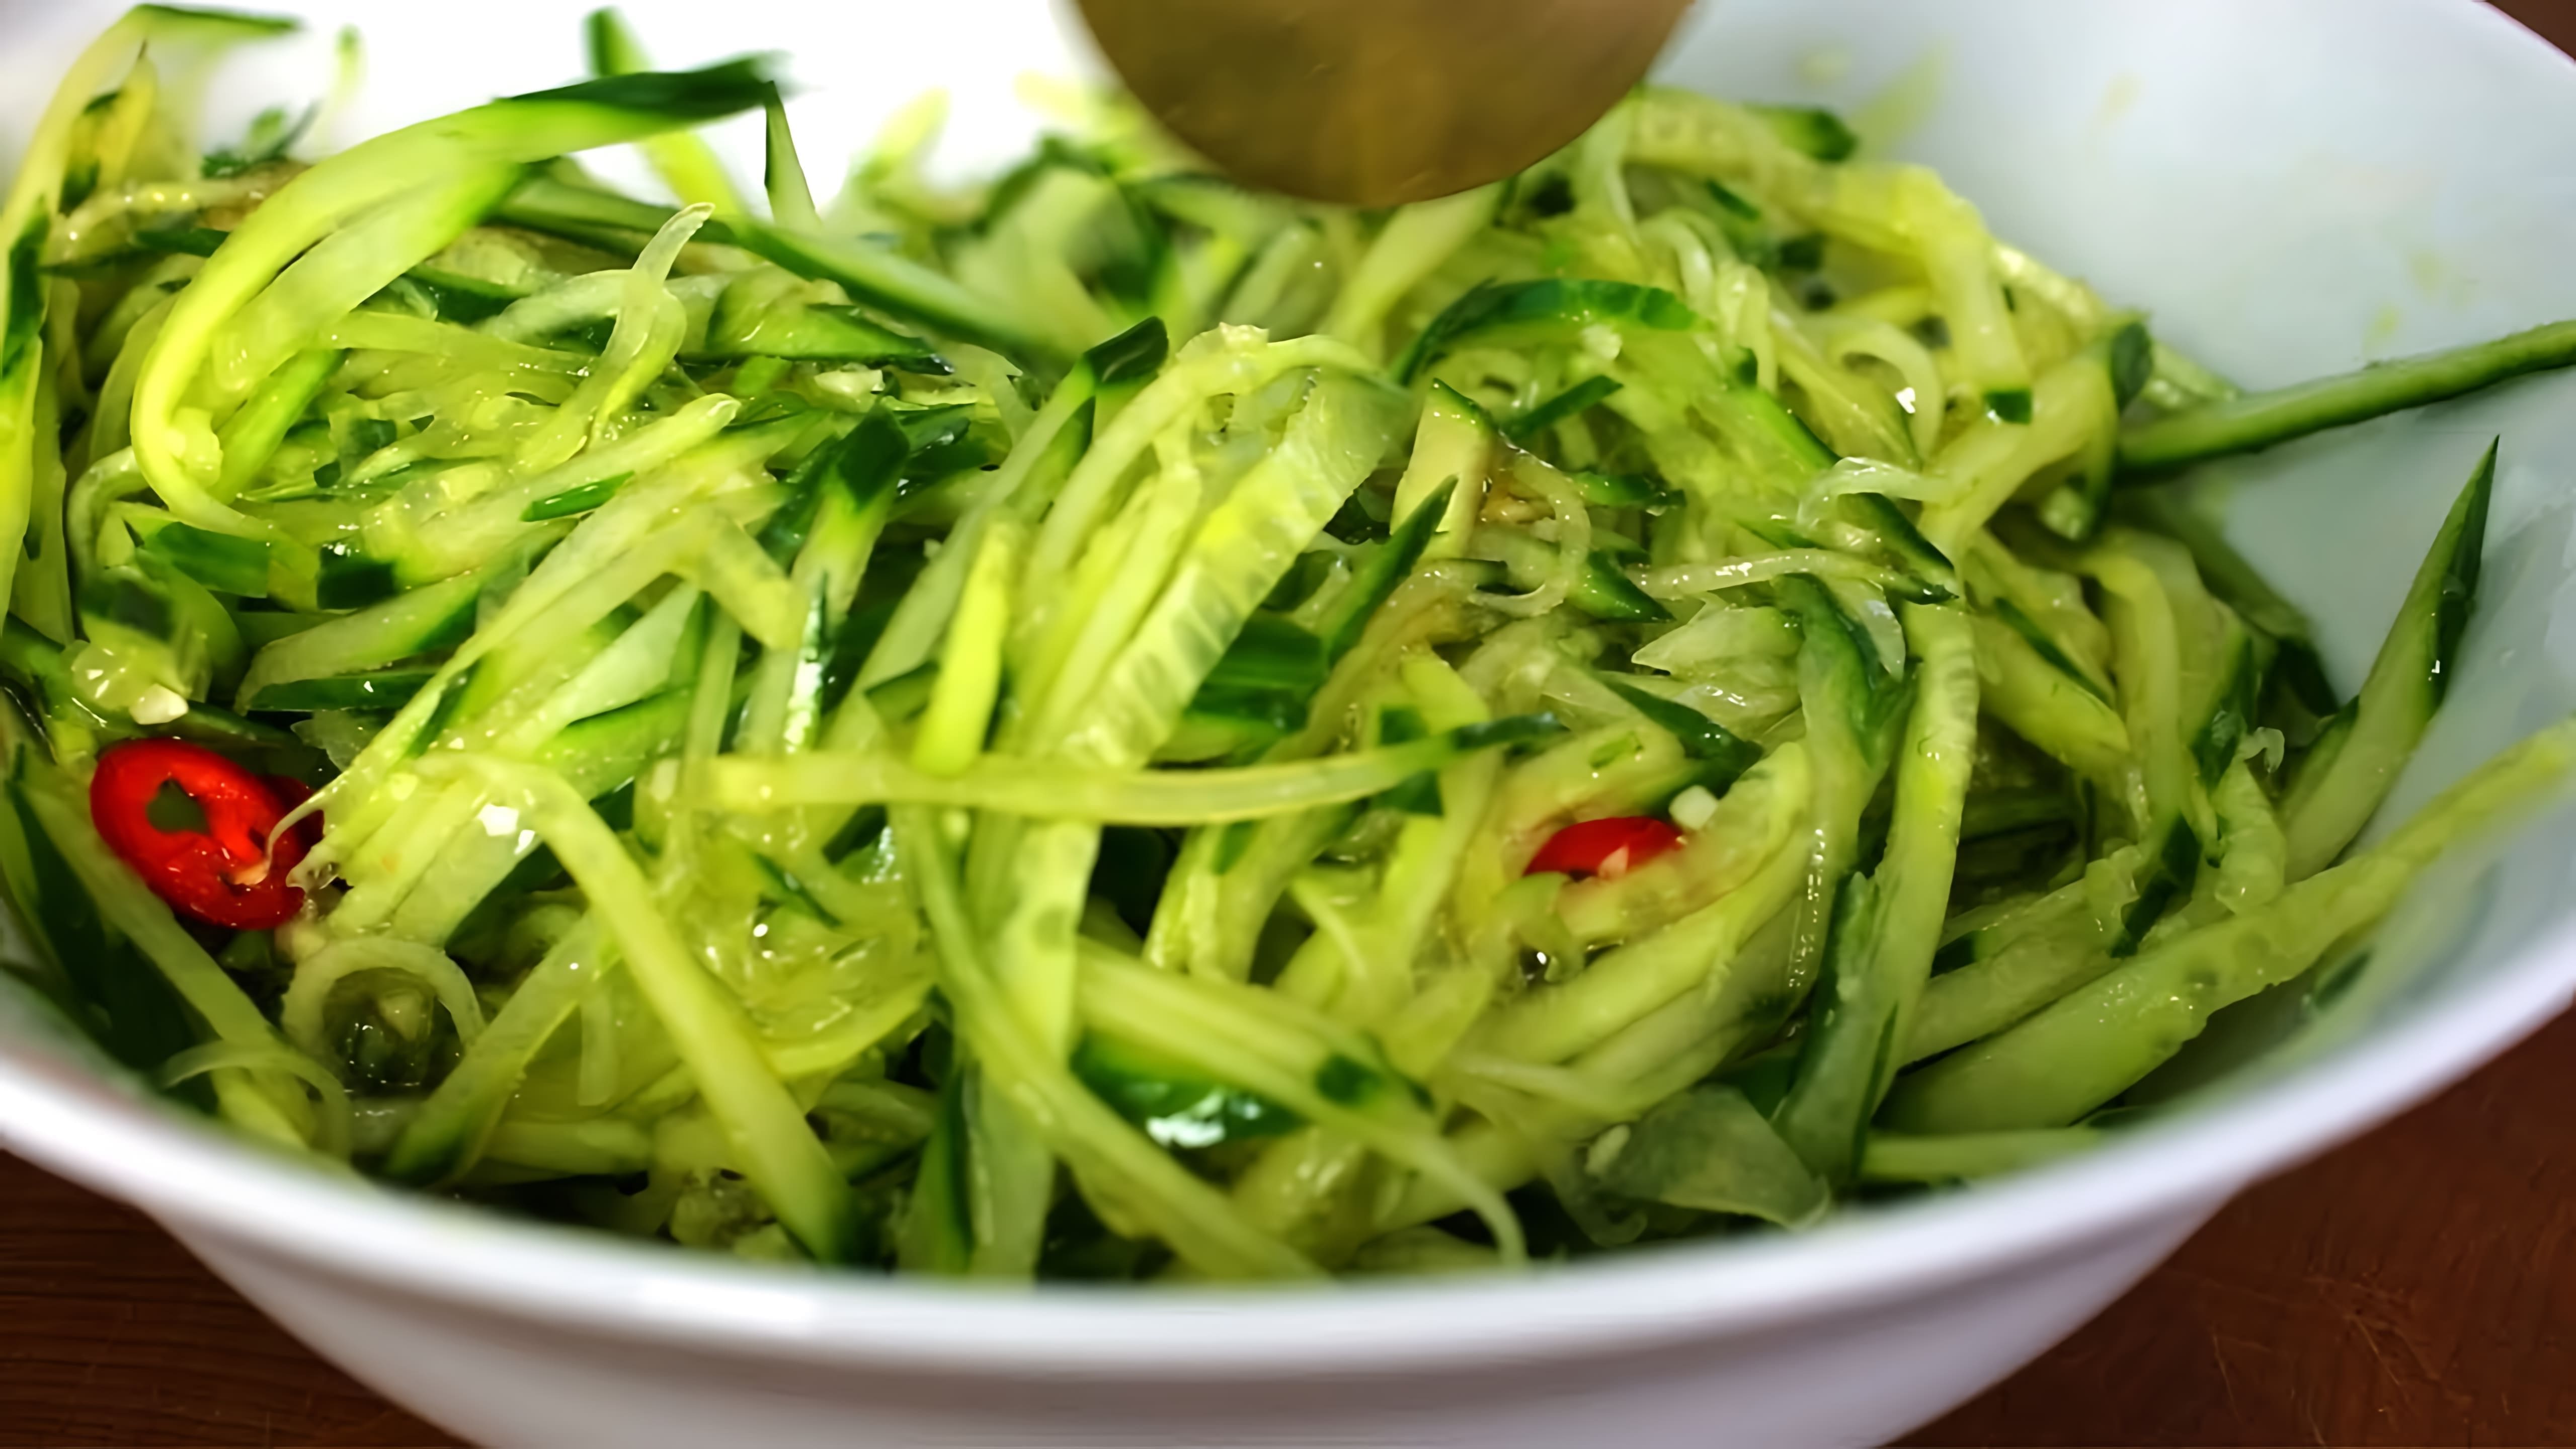 В этом видео демонстрируется рецепт салата из зеленой редьки с огурцом